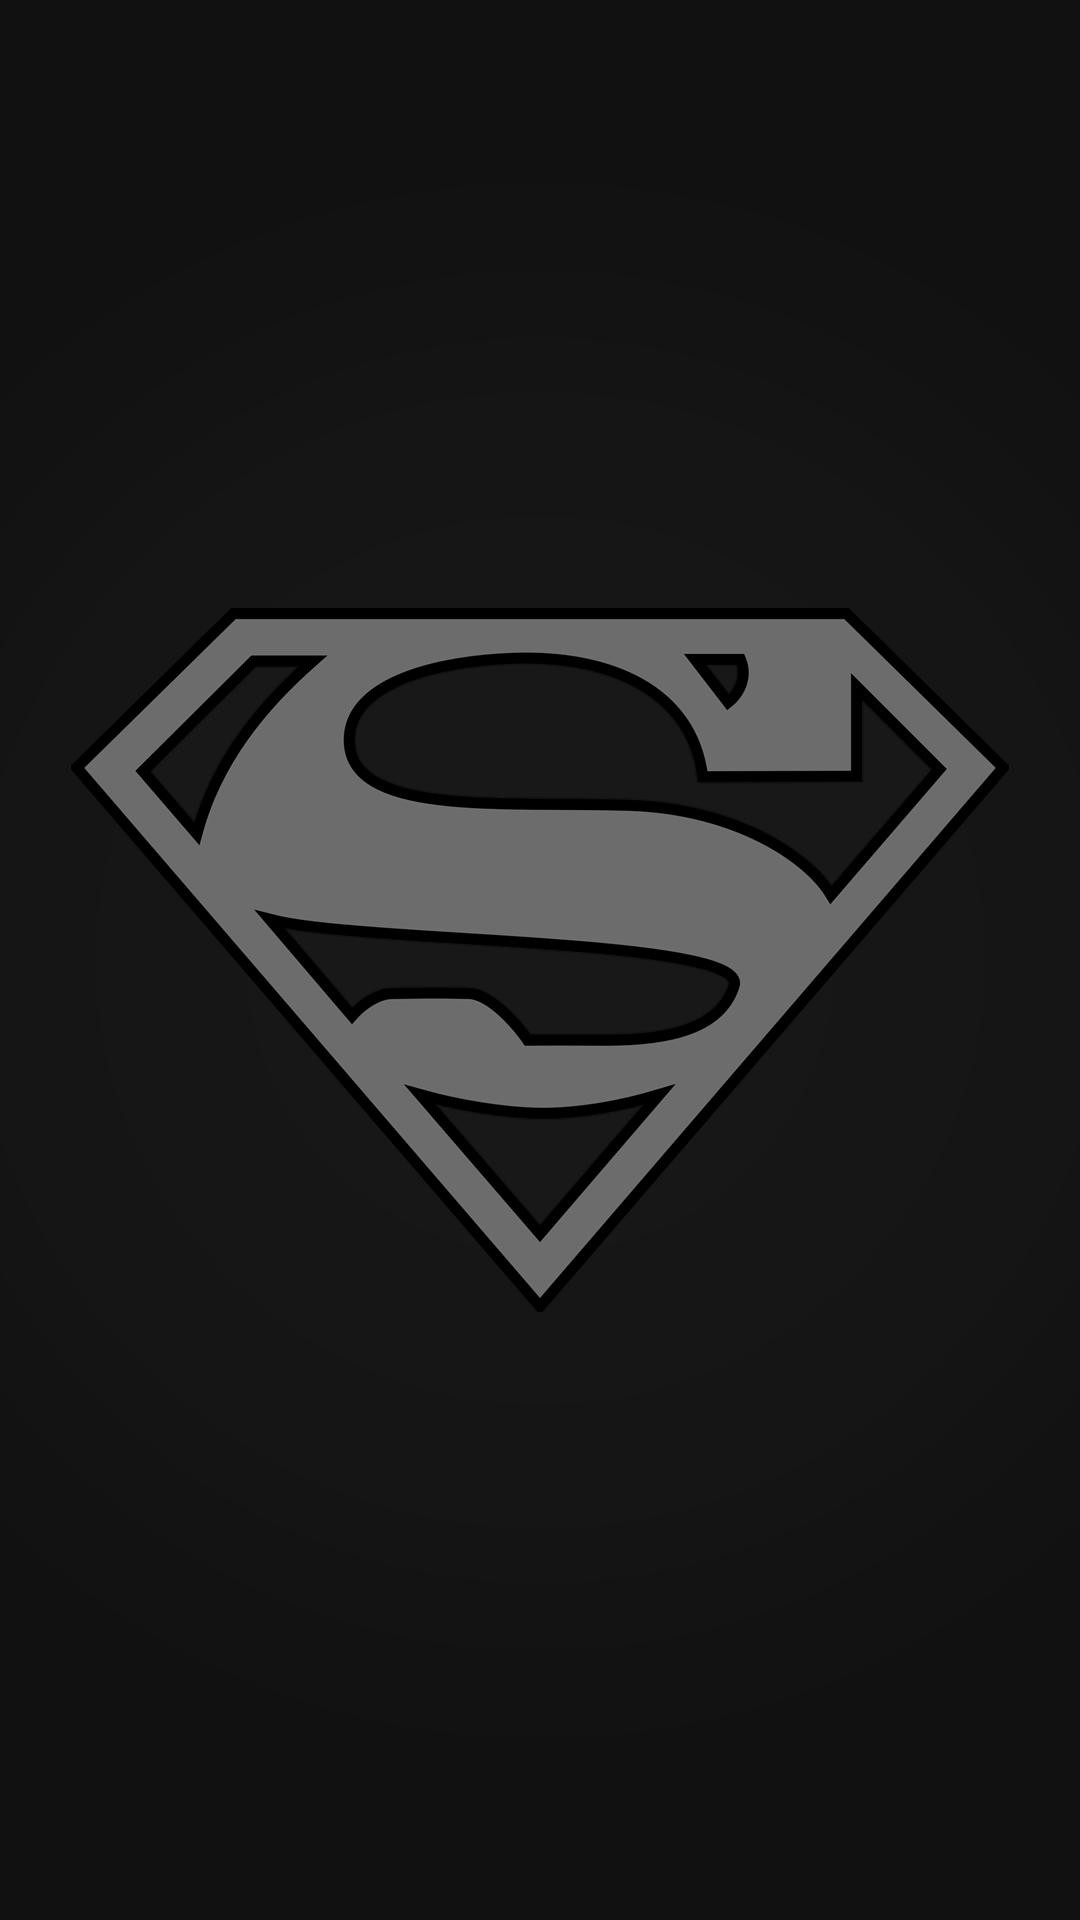 슈퍼맨 아이폰 배경 화면,슈퍼맨,소설 속의 인물,사법 리그,슈퍼 히어로,폰트